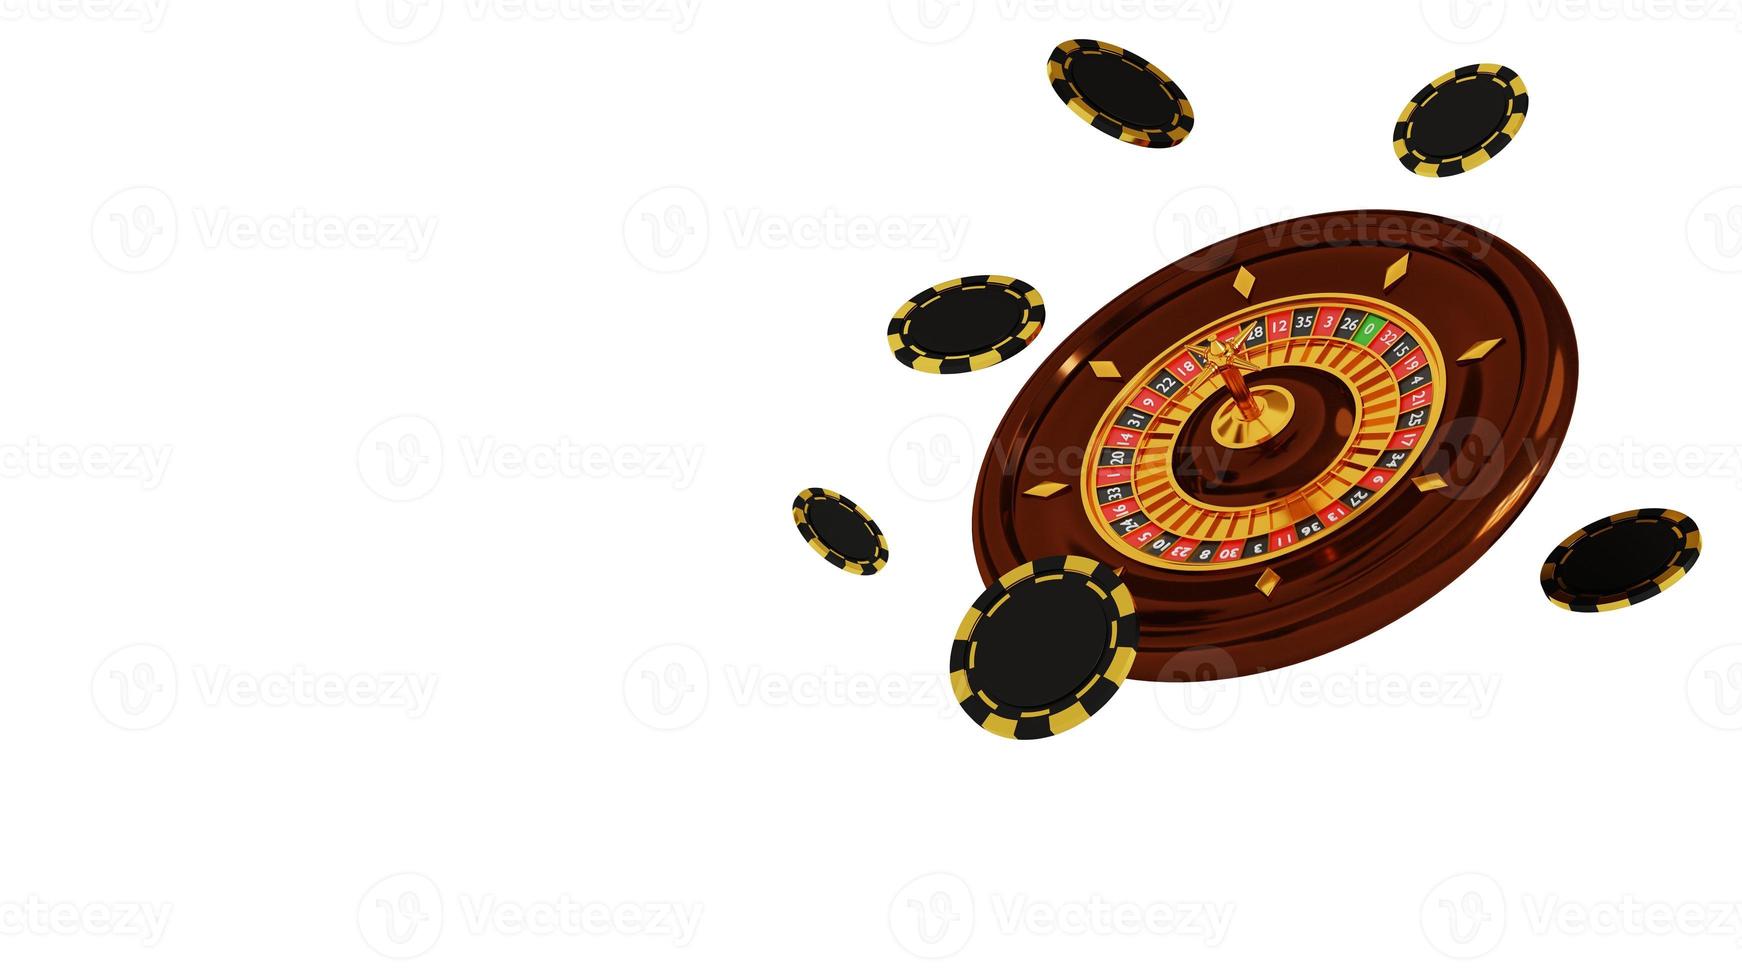 ruota della roulette del casinò e fiches da poker isolati su sfondo bianco. illustrazione 3d. gioco d'azzardo alla roulette del casinò online foto